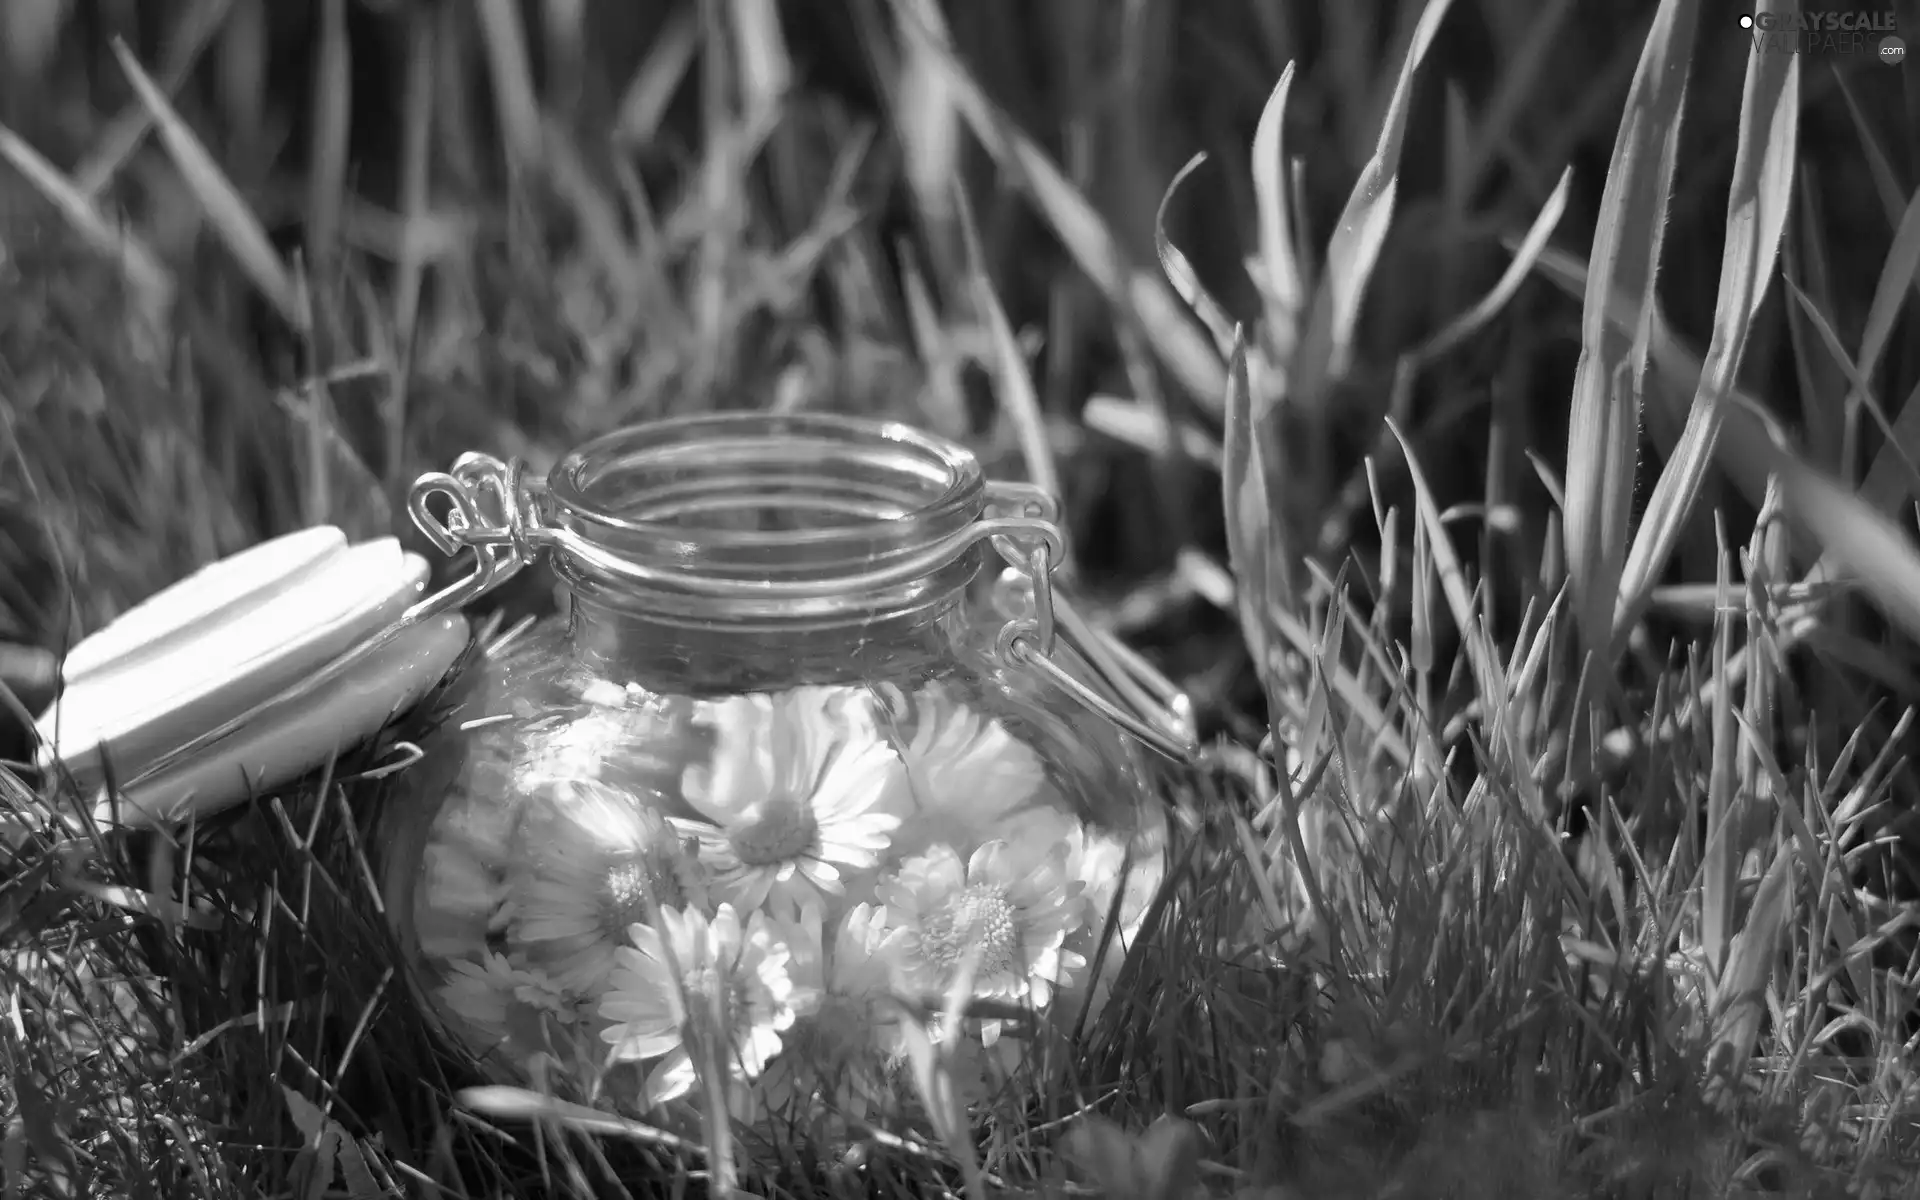 daisies, Meadow, jar